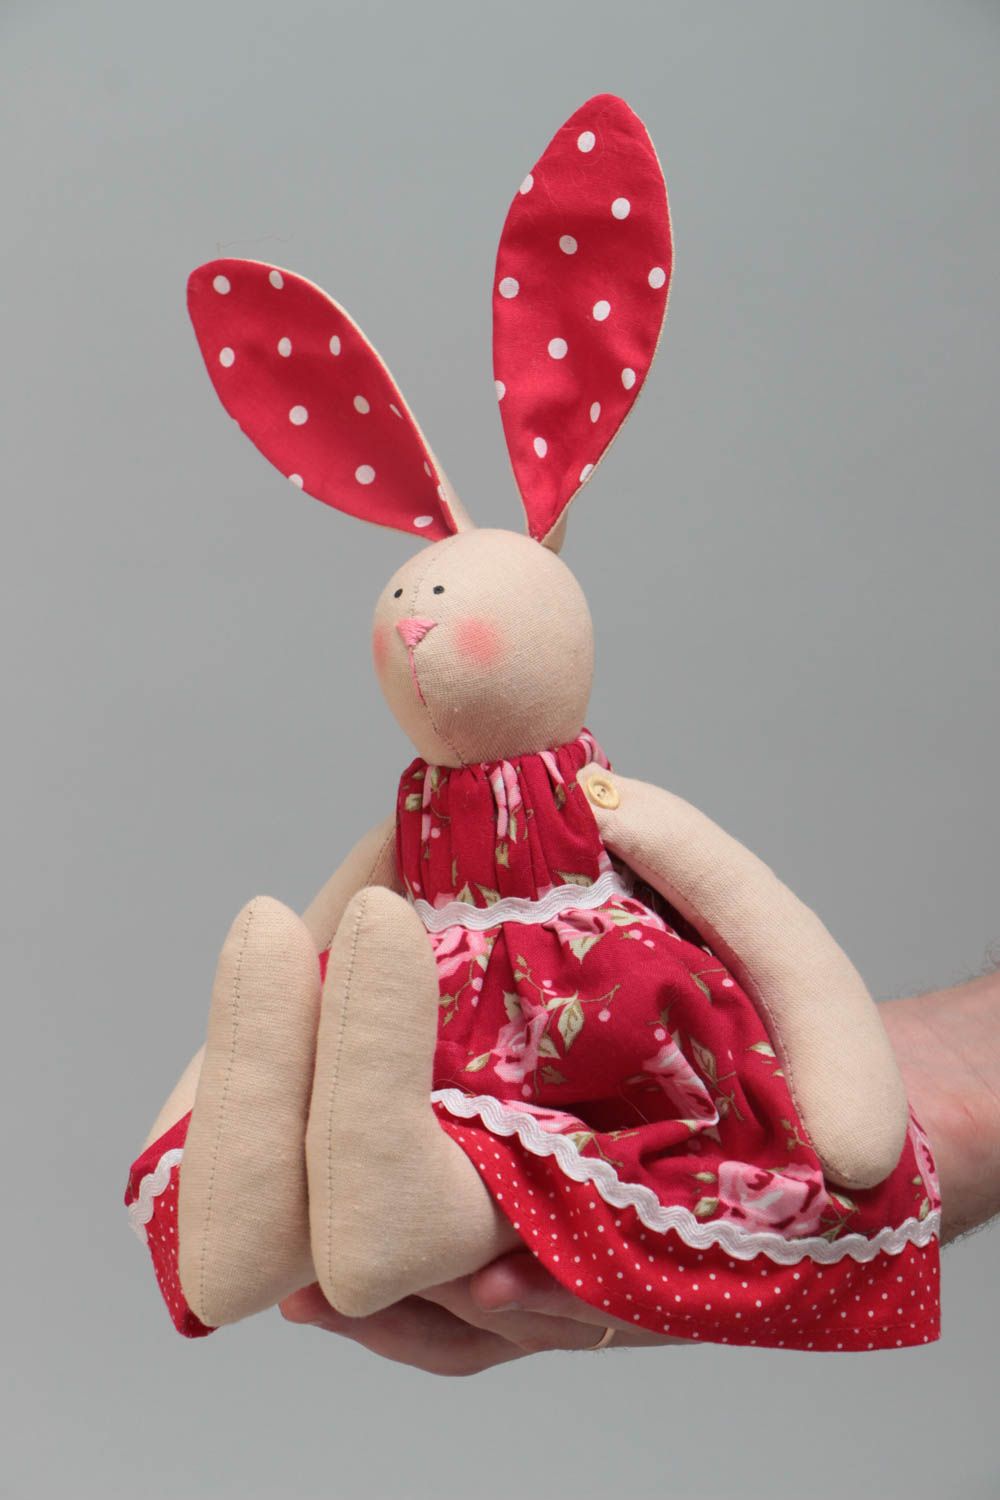 Тканевая игрушка в виде зайки в красном платье красивая небольшая ручной работы фото 5